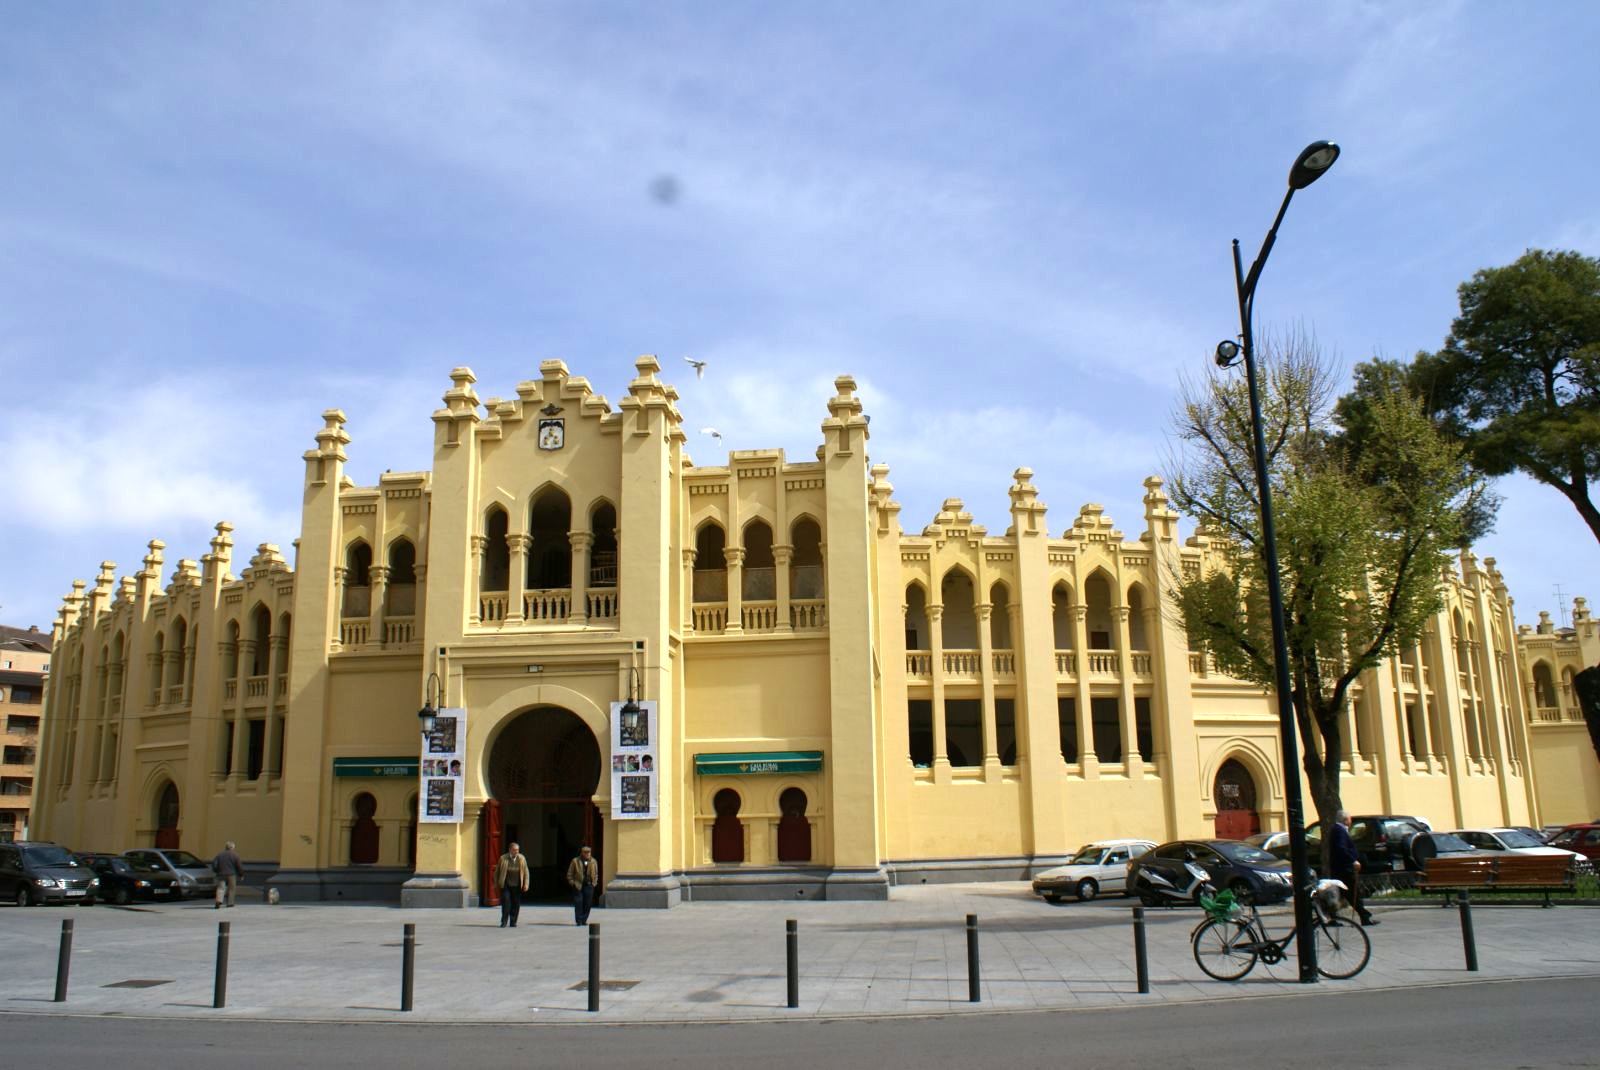 Plaza de Toros de Albacete